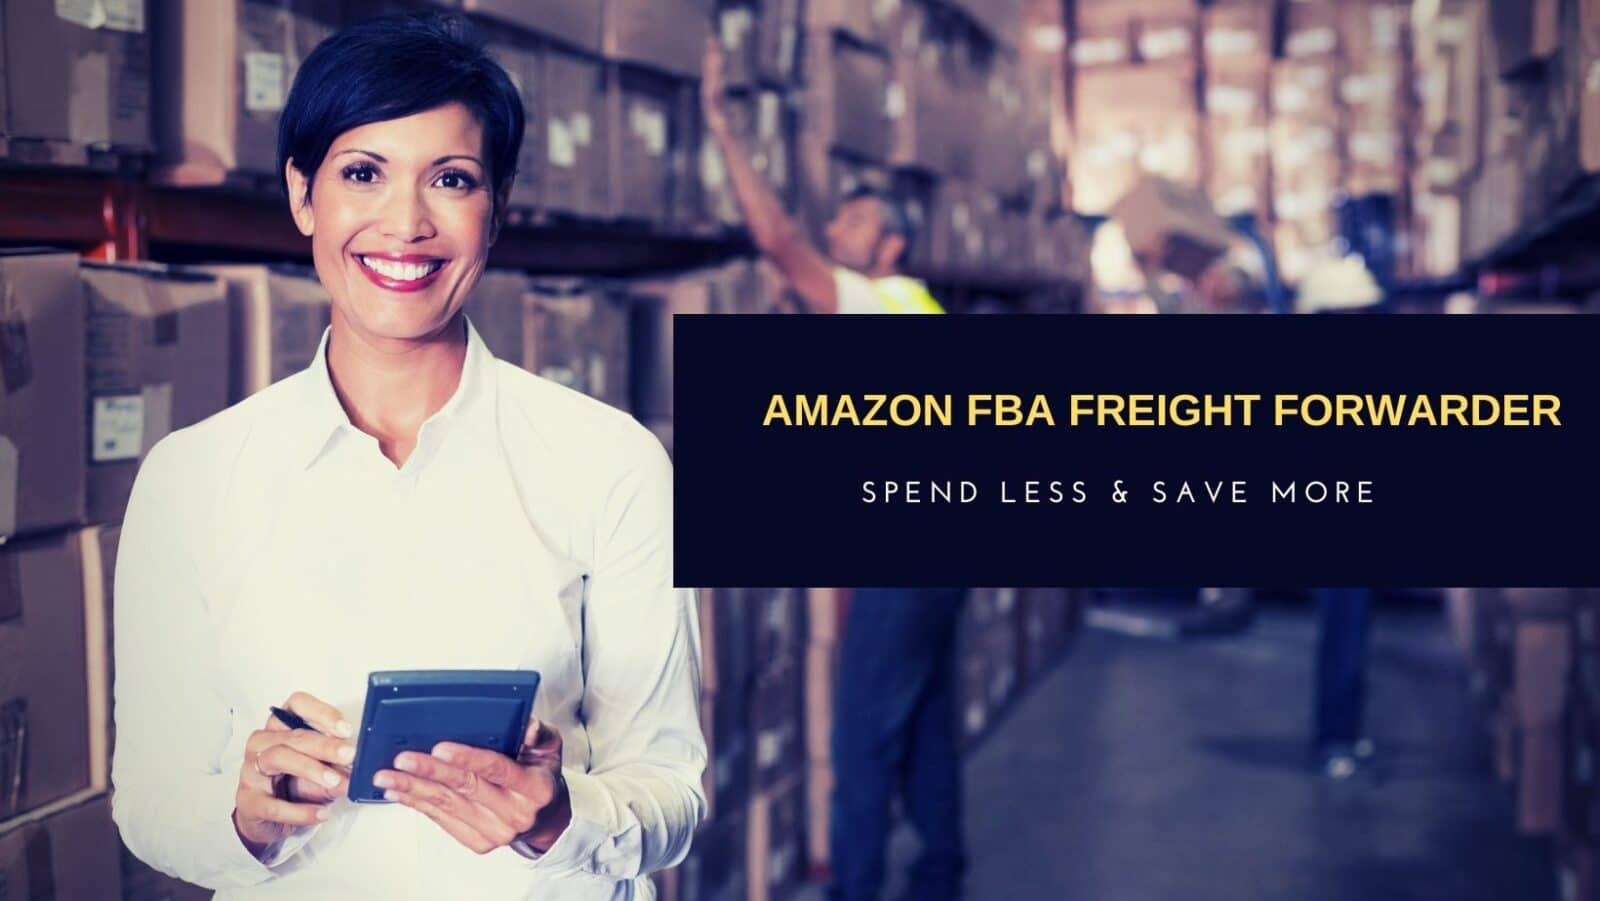 Amazon fba freight forwarder